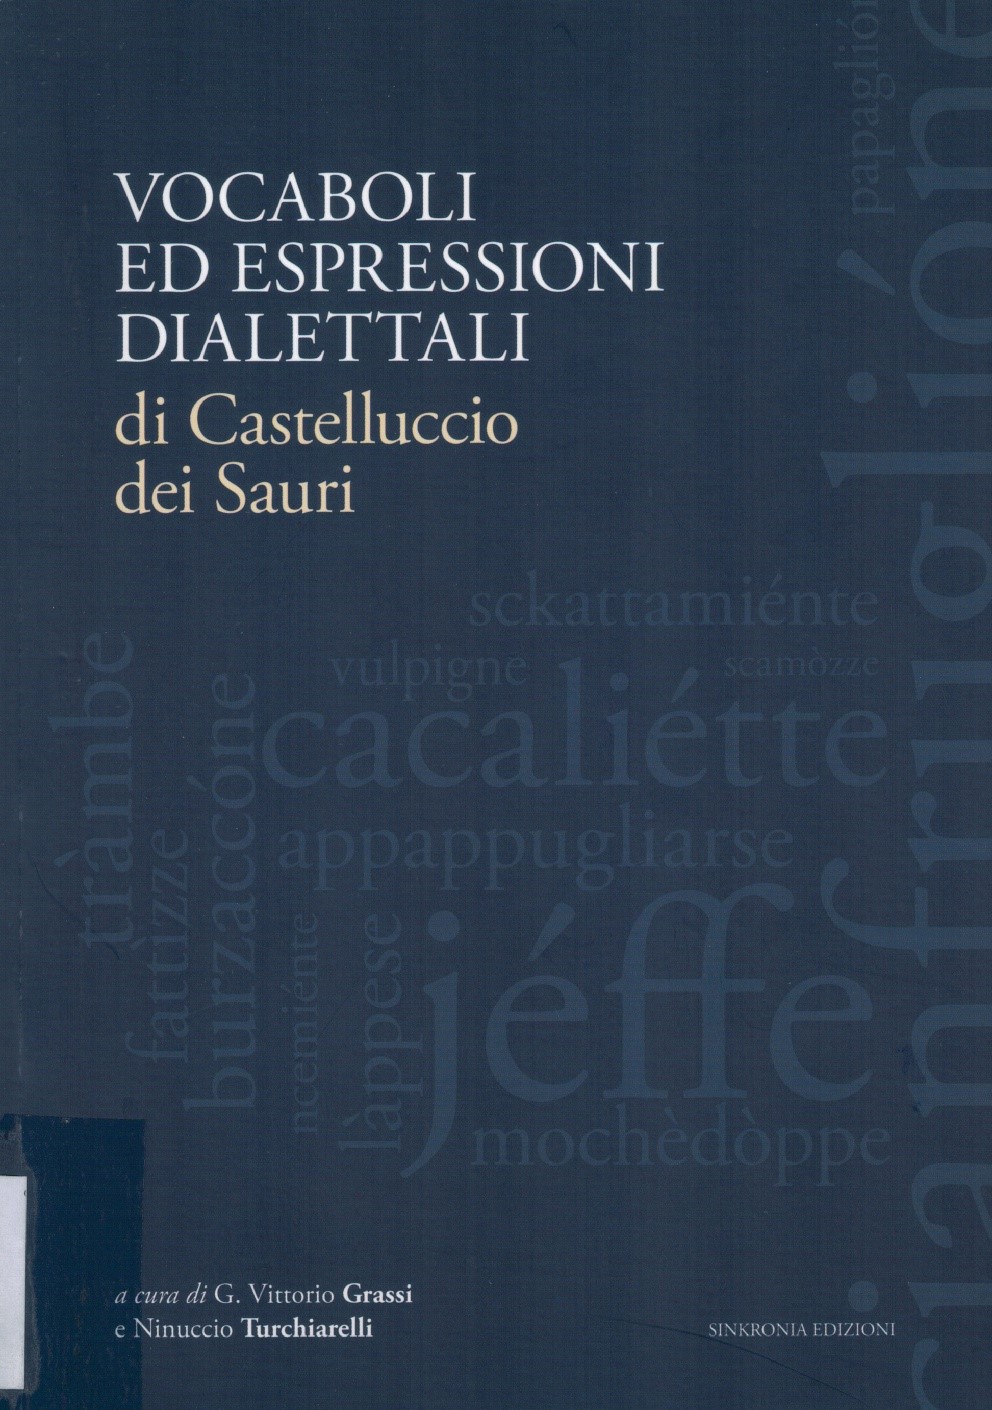 Copertina di Vocaboli ed espressioni dialettali